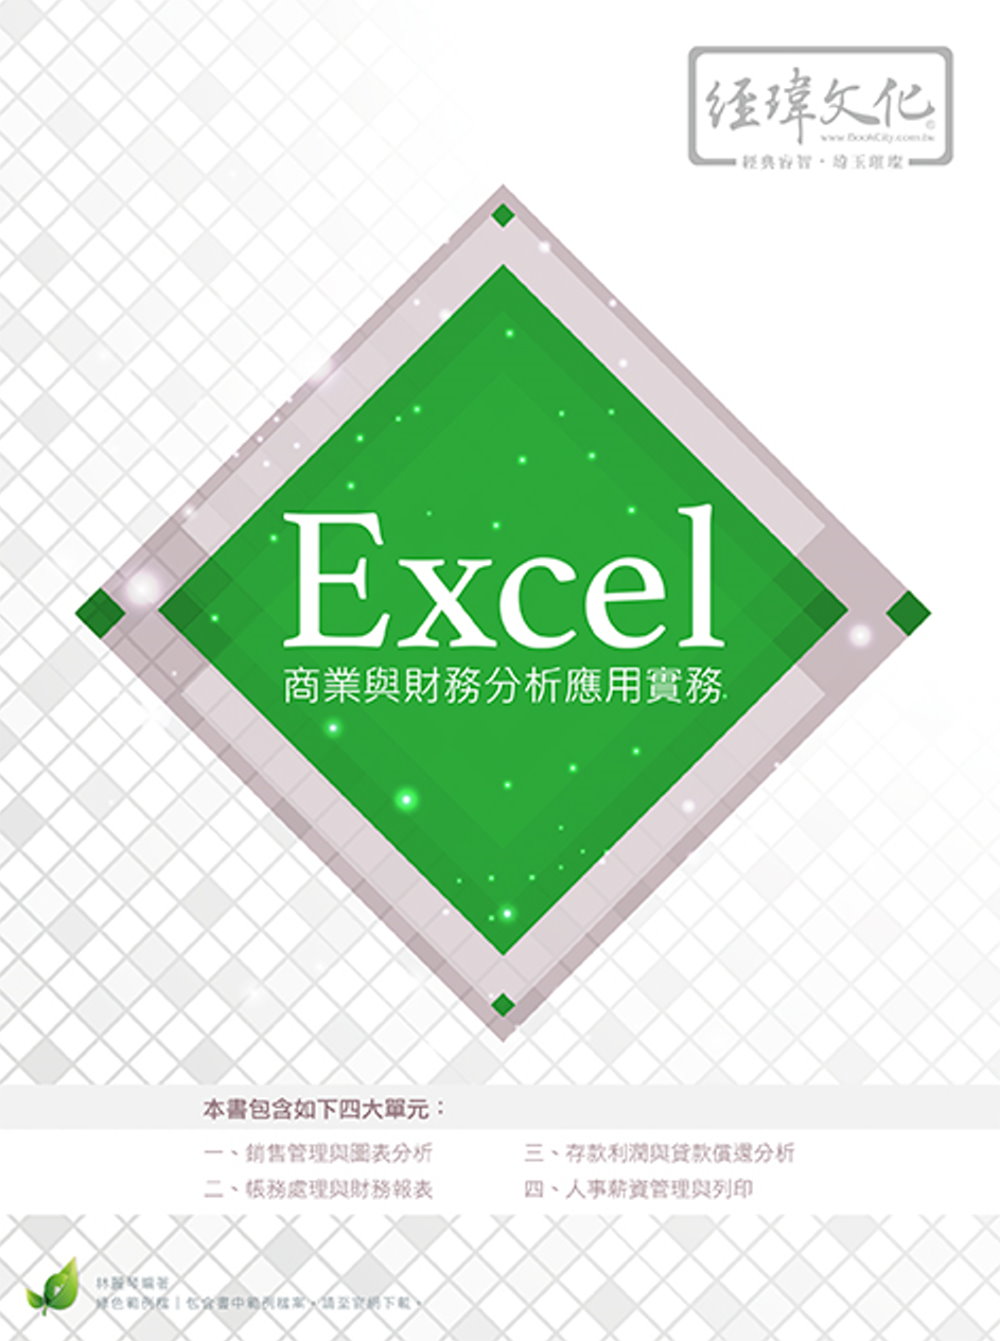 Excel 商業與財務分析應用實務(附綠色範例檔)